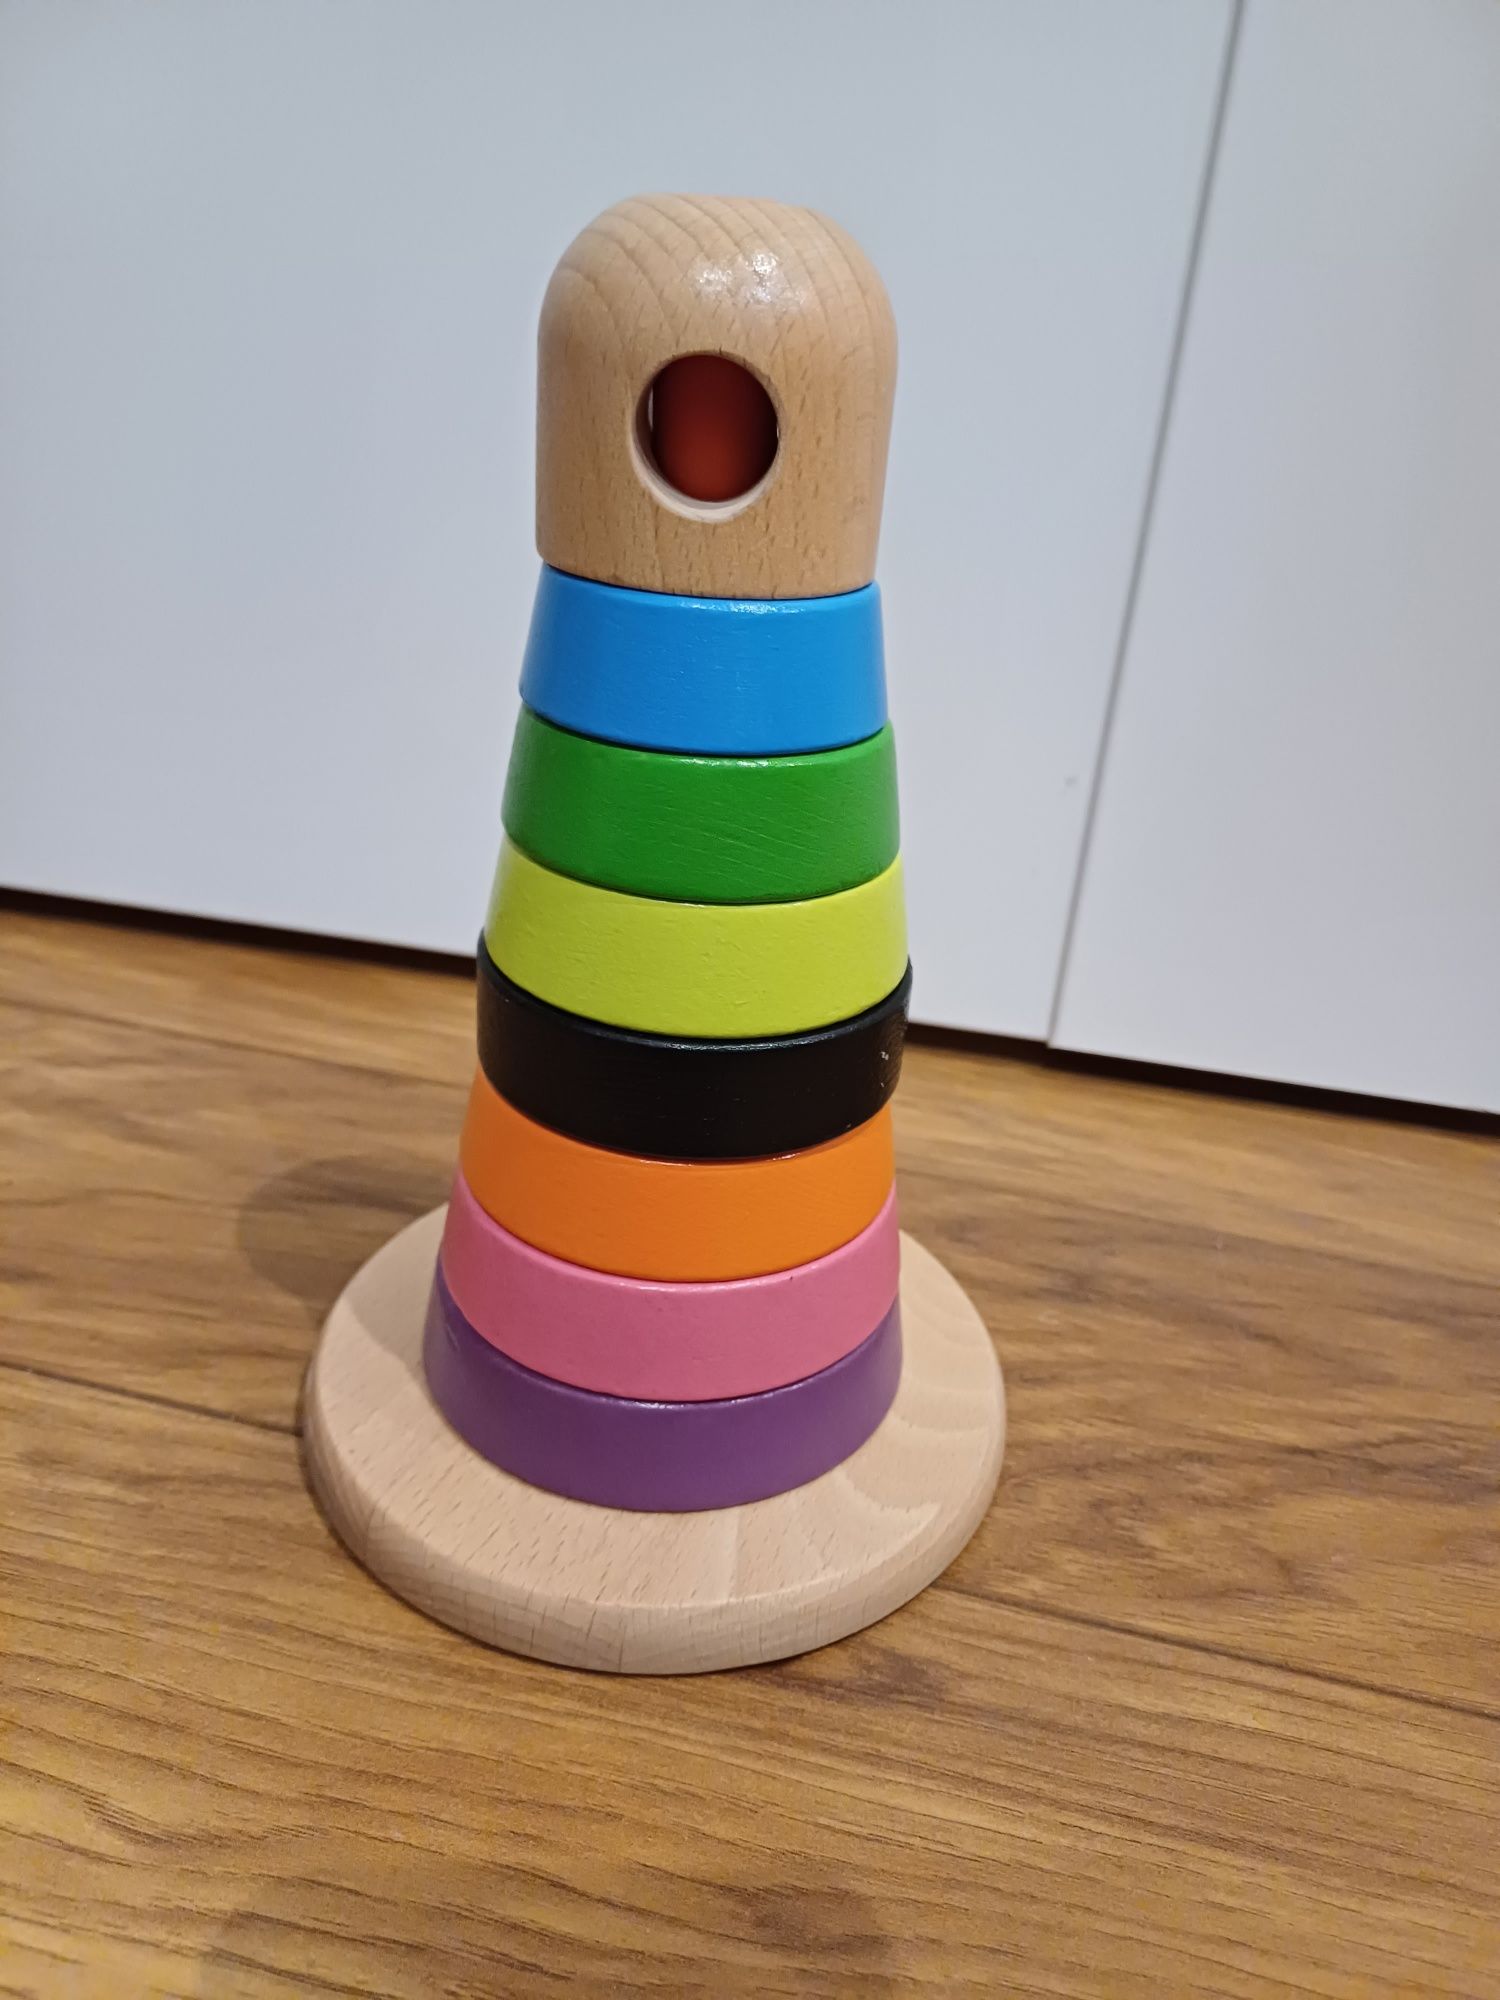 Ikea Mula wieża drewniana zabawka